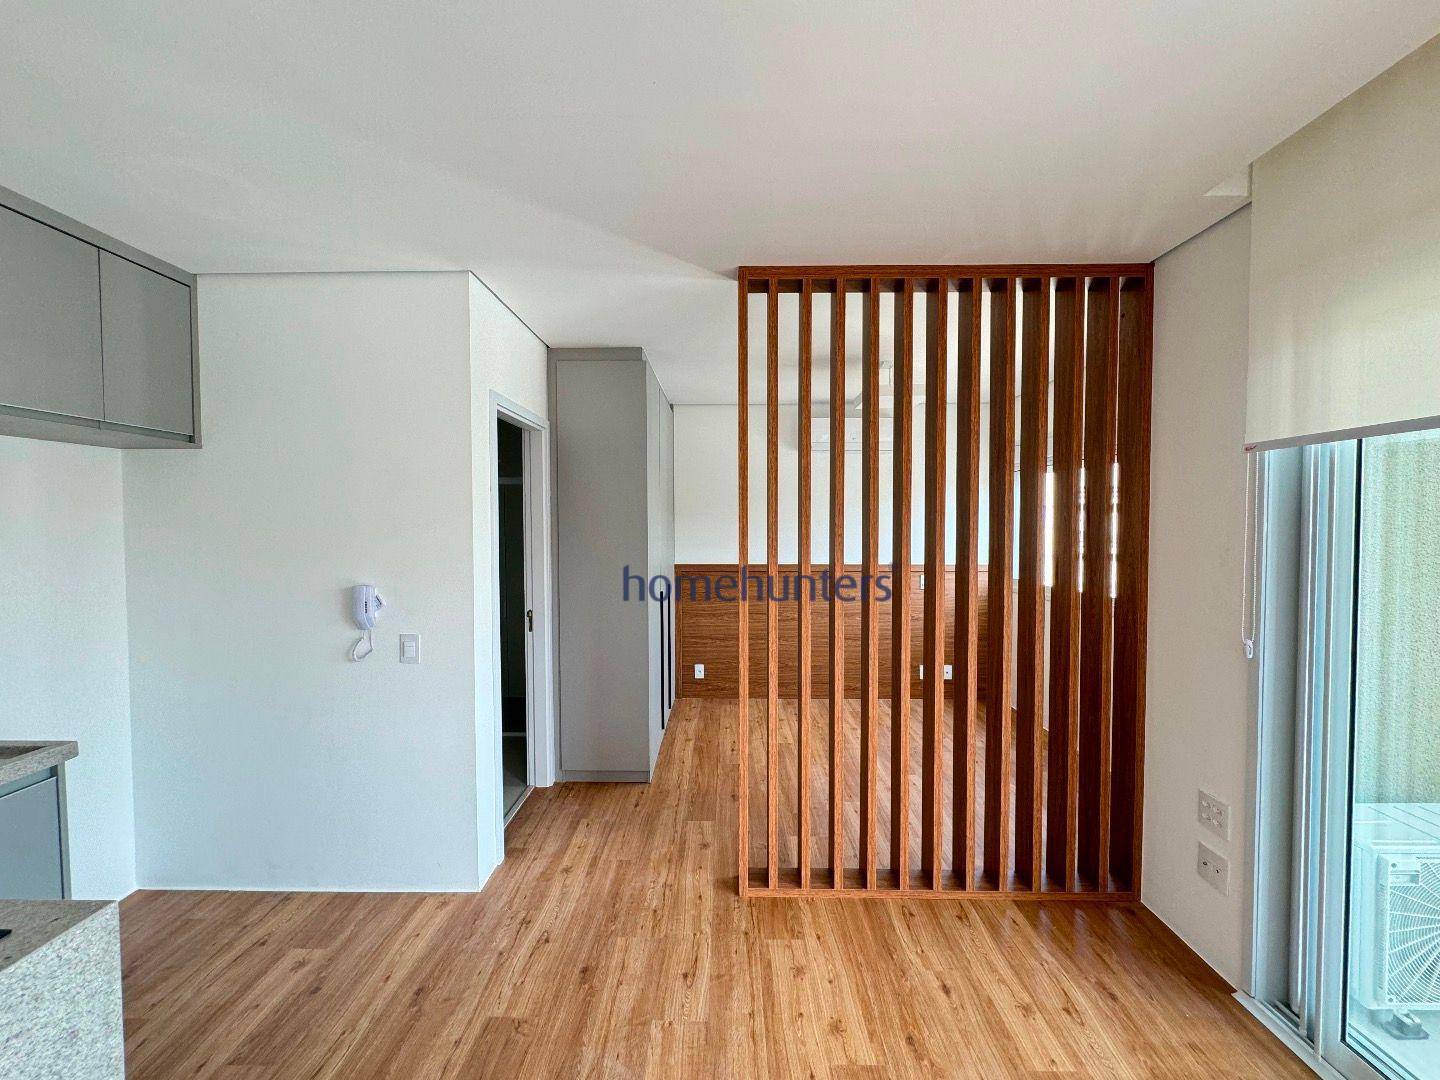 Apartamento, 1 quarto, 40 m² - Foto 4